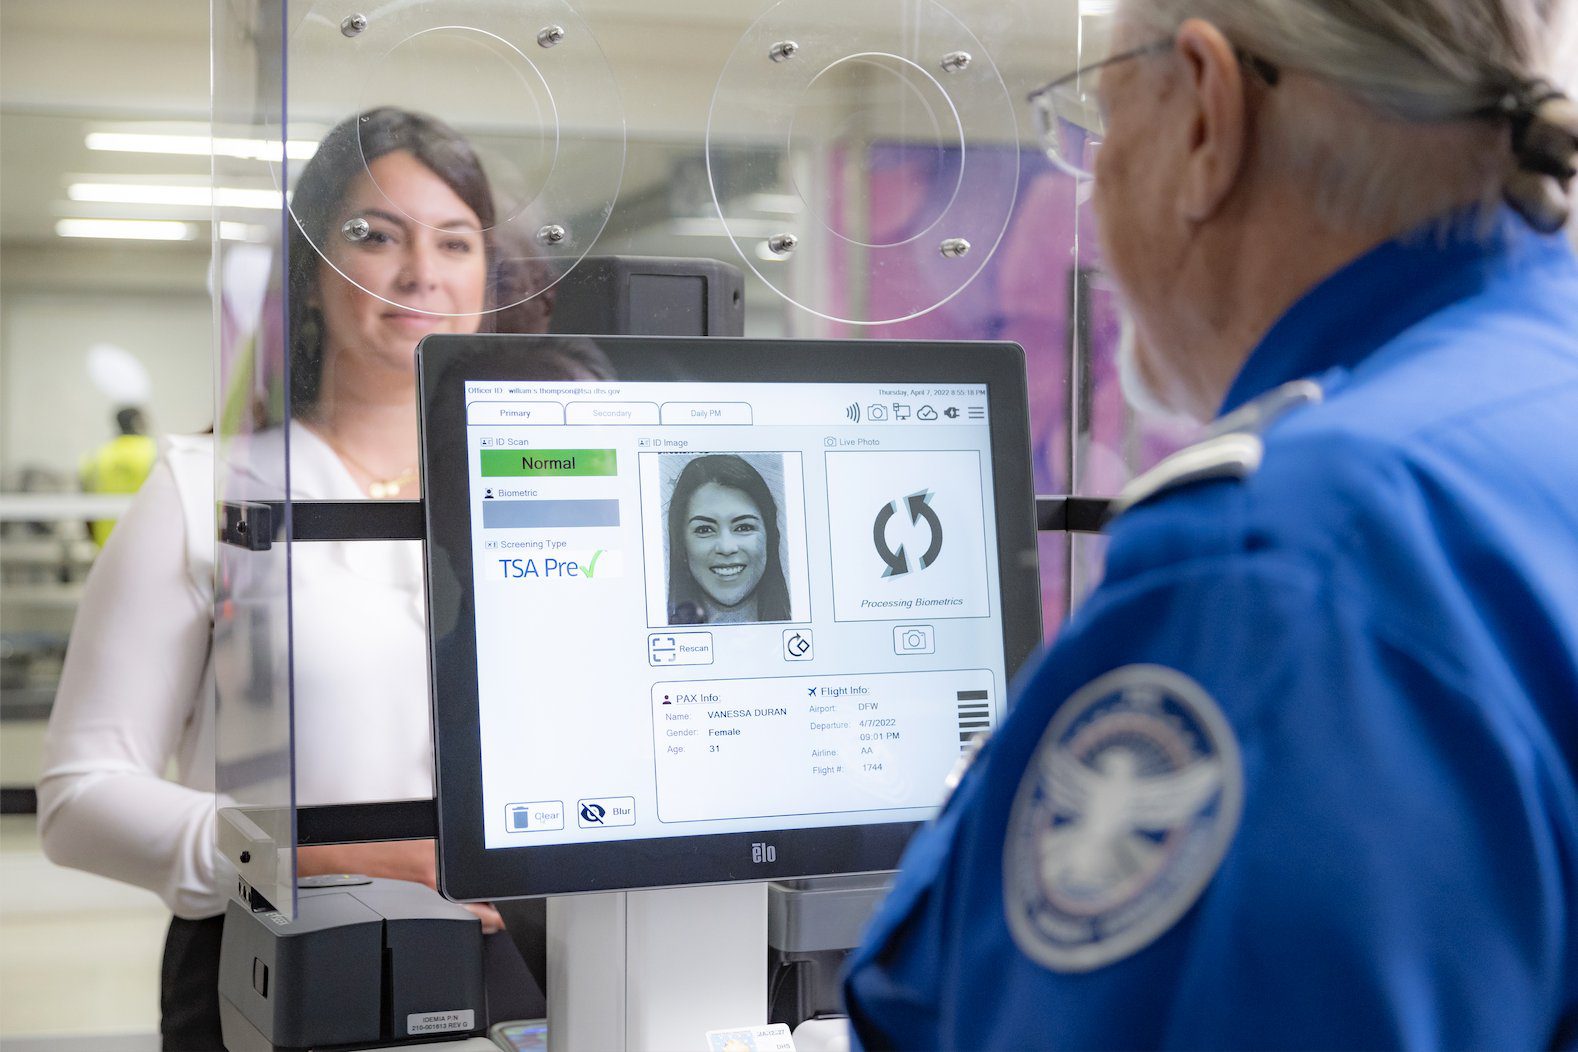 DFW Airport Unveils Facial Recognition